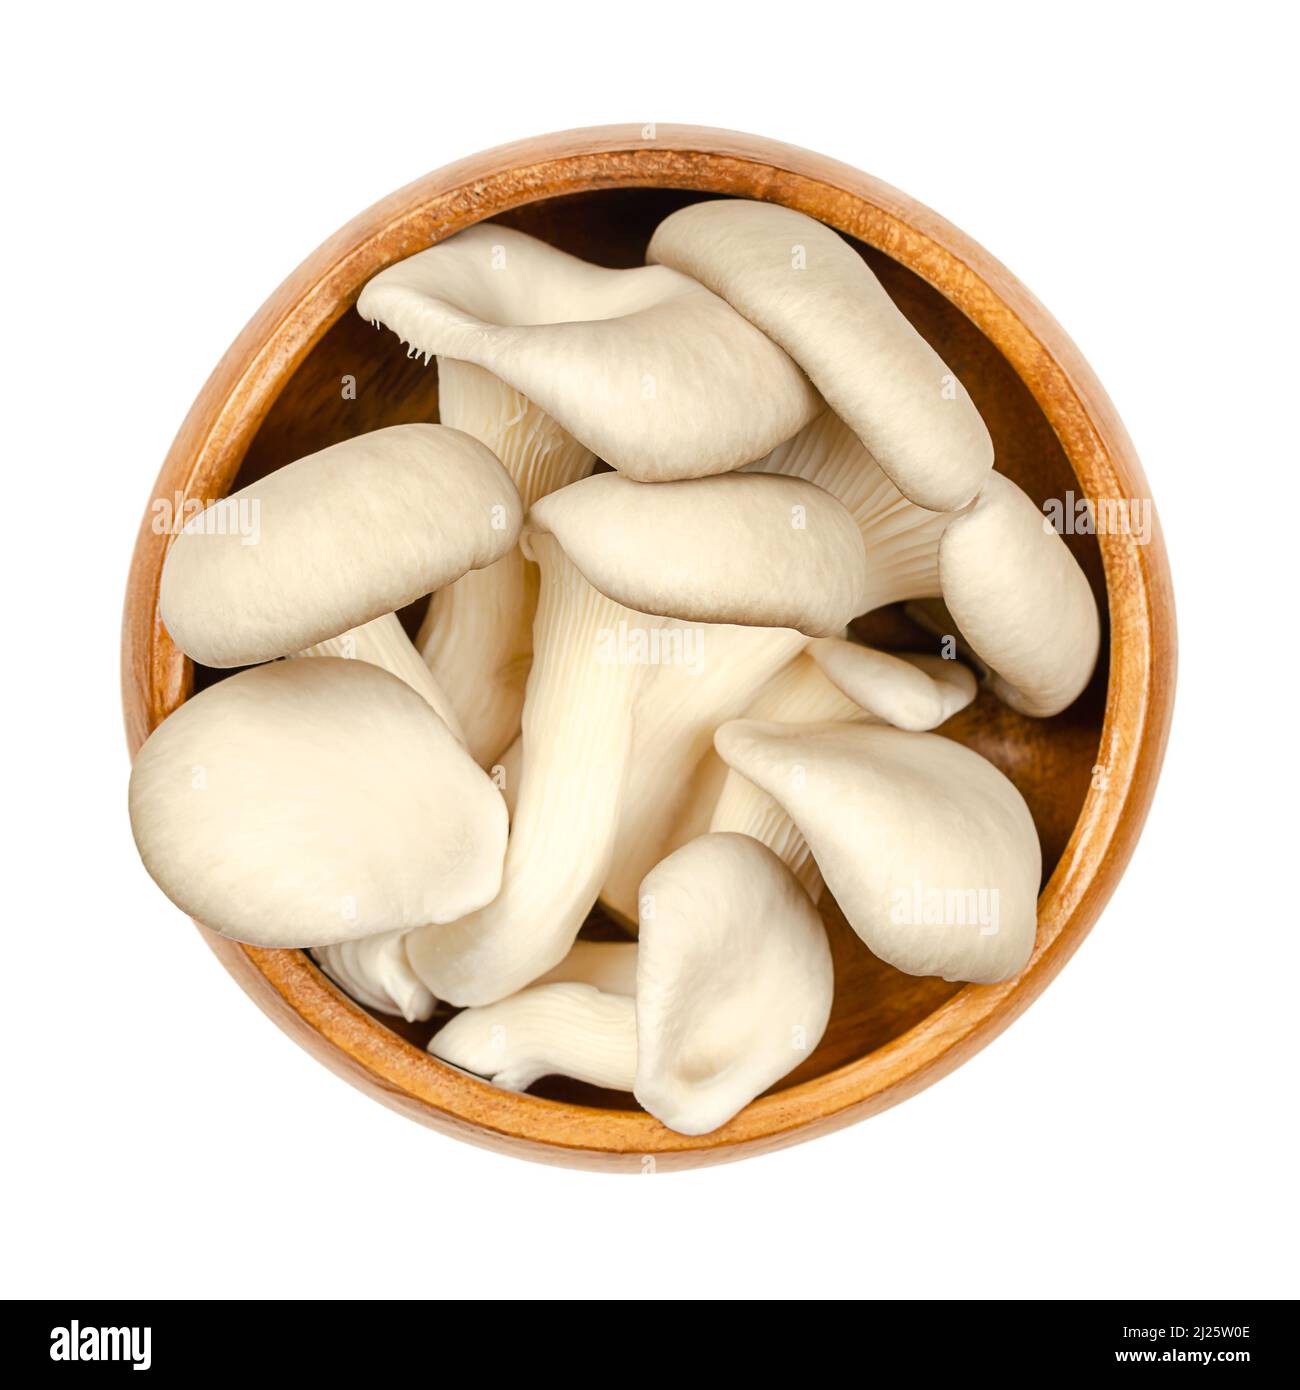 Frische Austernpilze, in einer Holzschale. Pleurotus, auch als Abalone- oder Baumpilze bekannt. Einer der am meisten kultivierten und gefressenen Pilze. Stockfoto